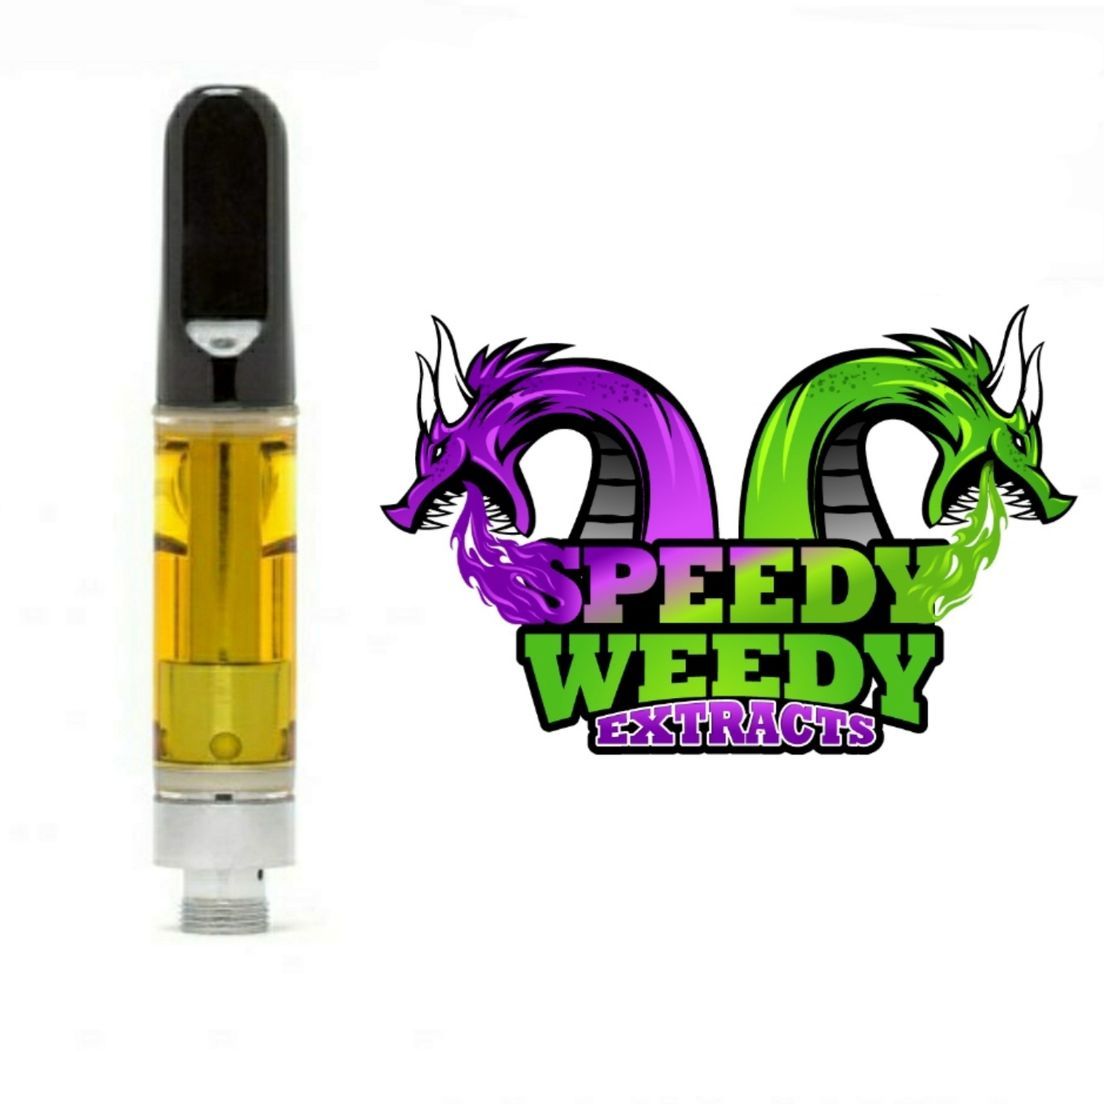 1. Speedy Weedy 1g Cartridge - Lemon Banana Sherbert